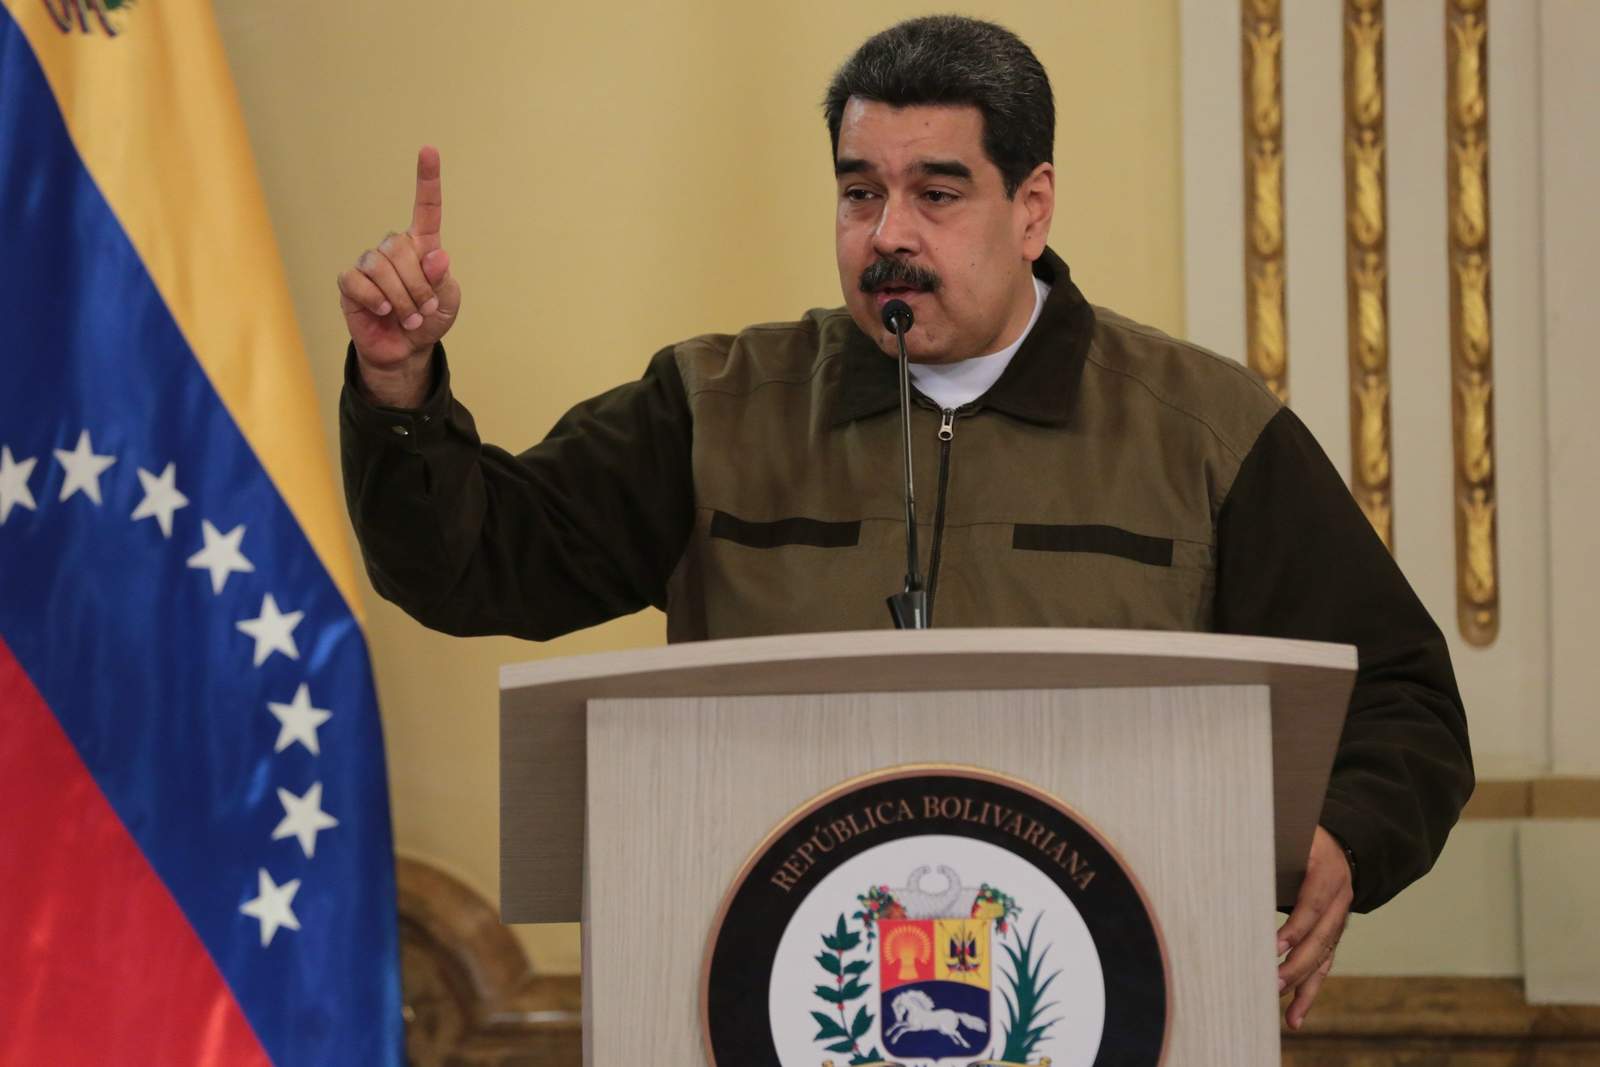 Piden a PGR detener a Maduro cuando arribe a México. Noticias en tiempo real